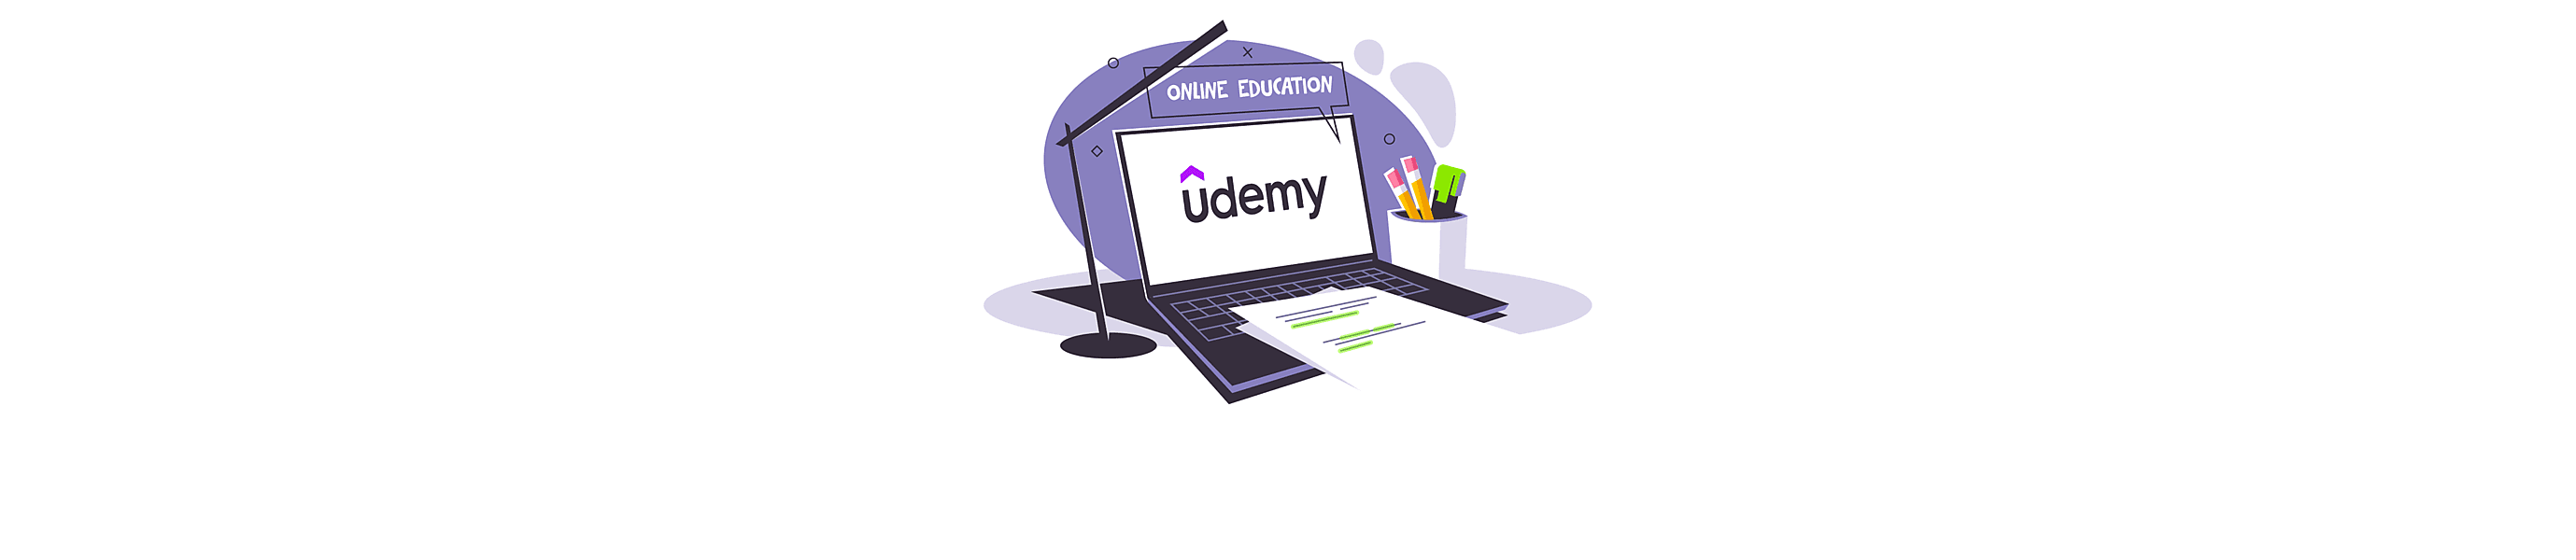 Udemy Development: How To Create An LMS Like Udemy